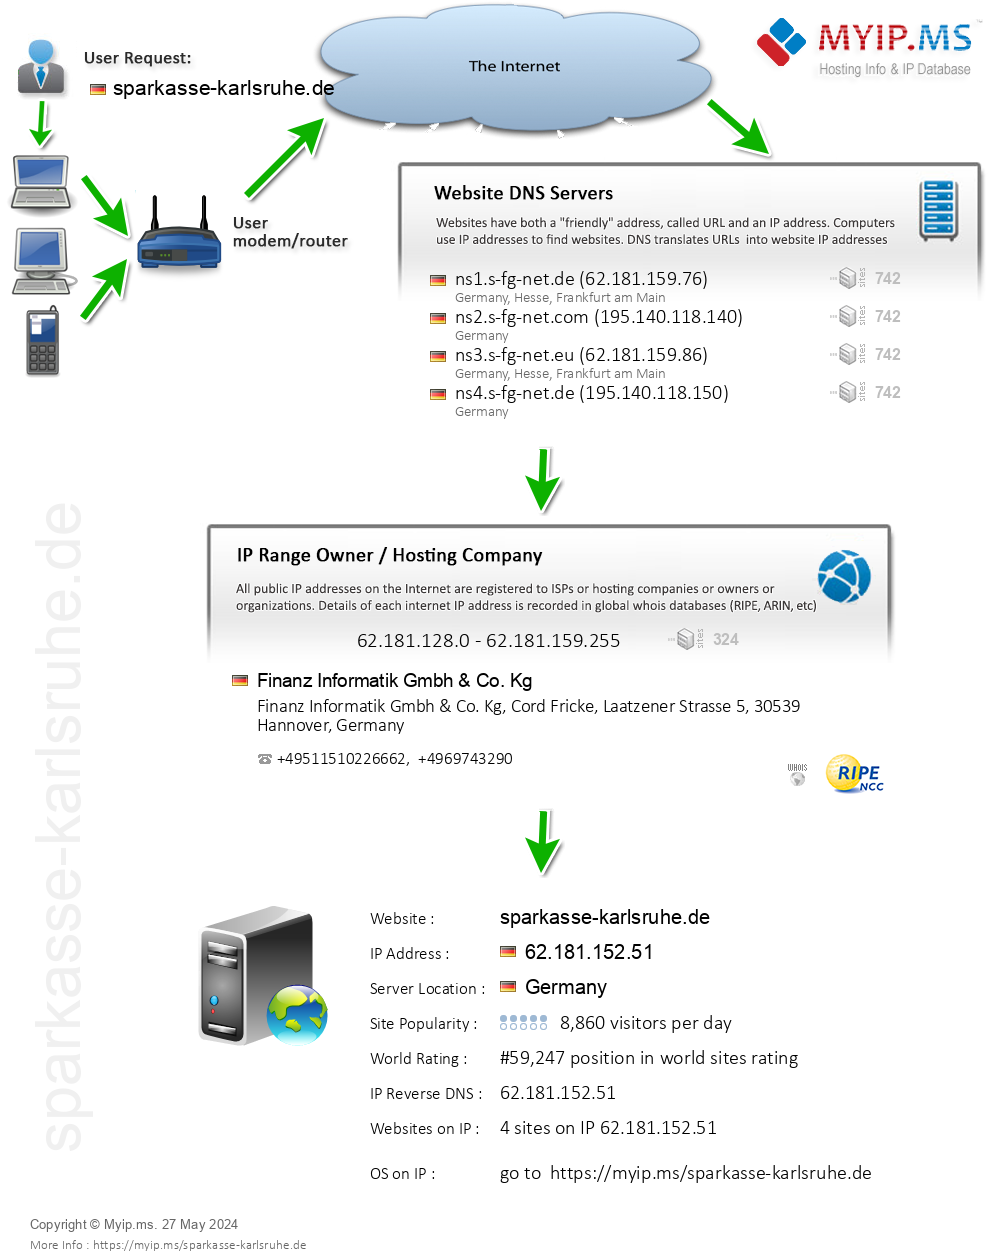 Sparkasse-karlsruhe.de - Website Hosting Visual IP Diagram